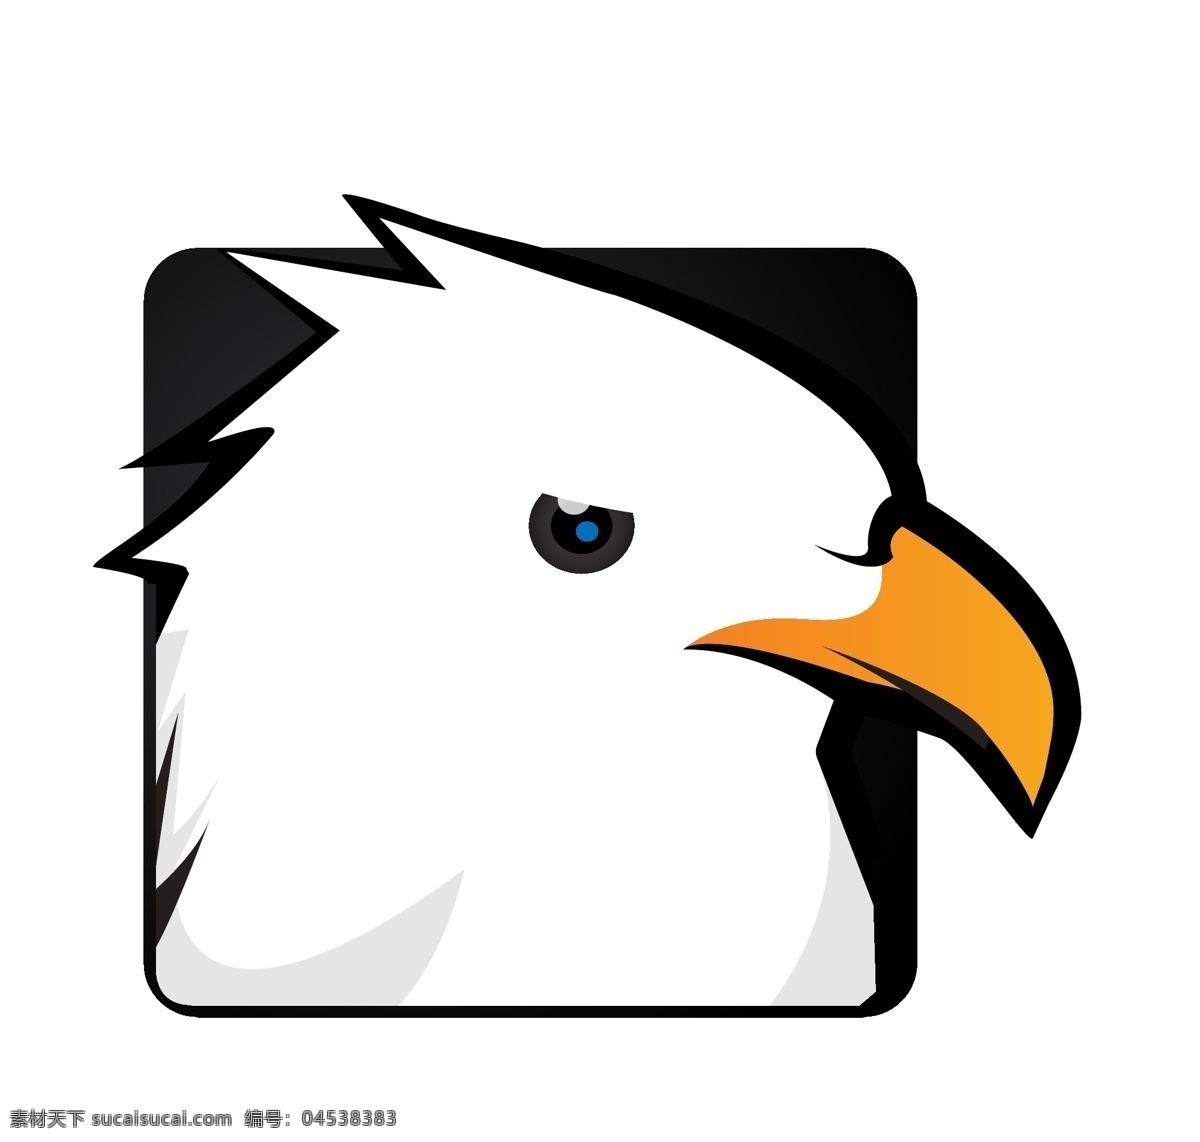 老鹰 图标 app icon 其他矢量 矢量素材 矢量 模板下载 老鹰图标 鹰图标 手机